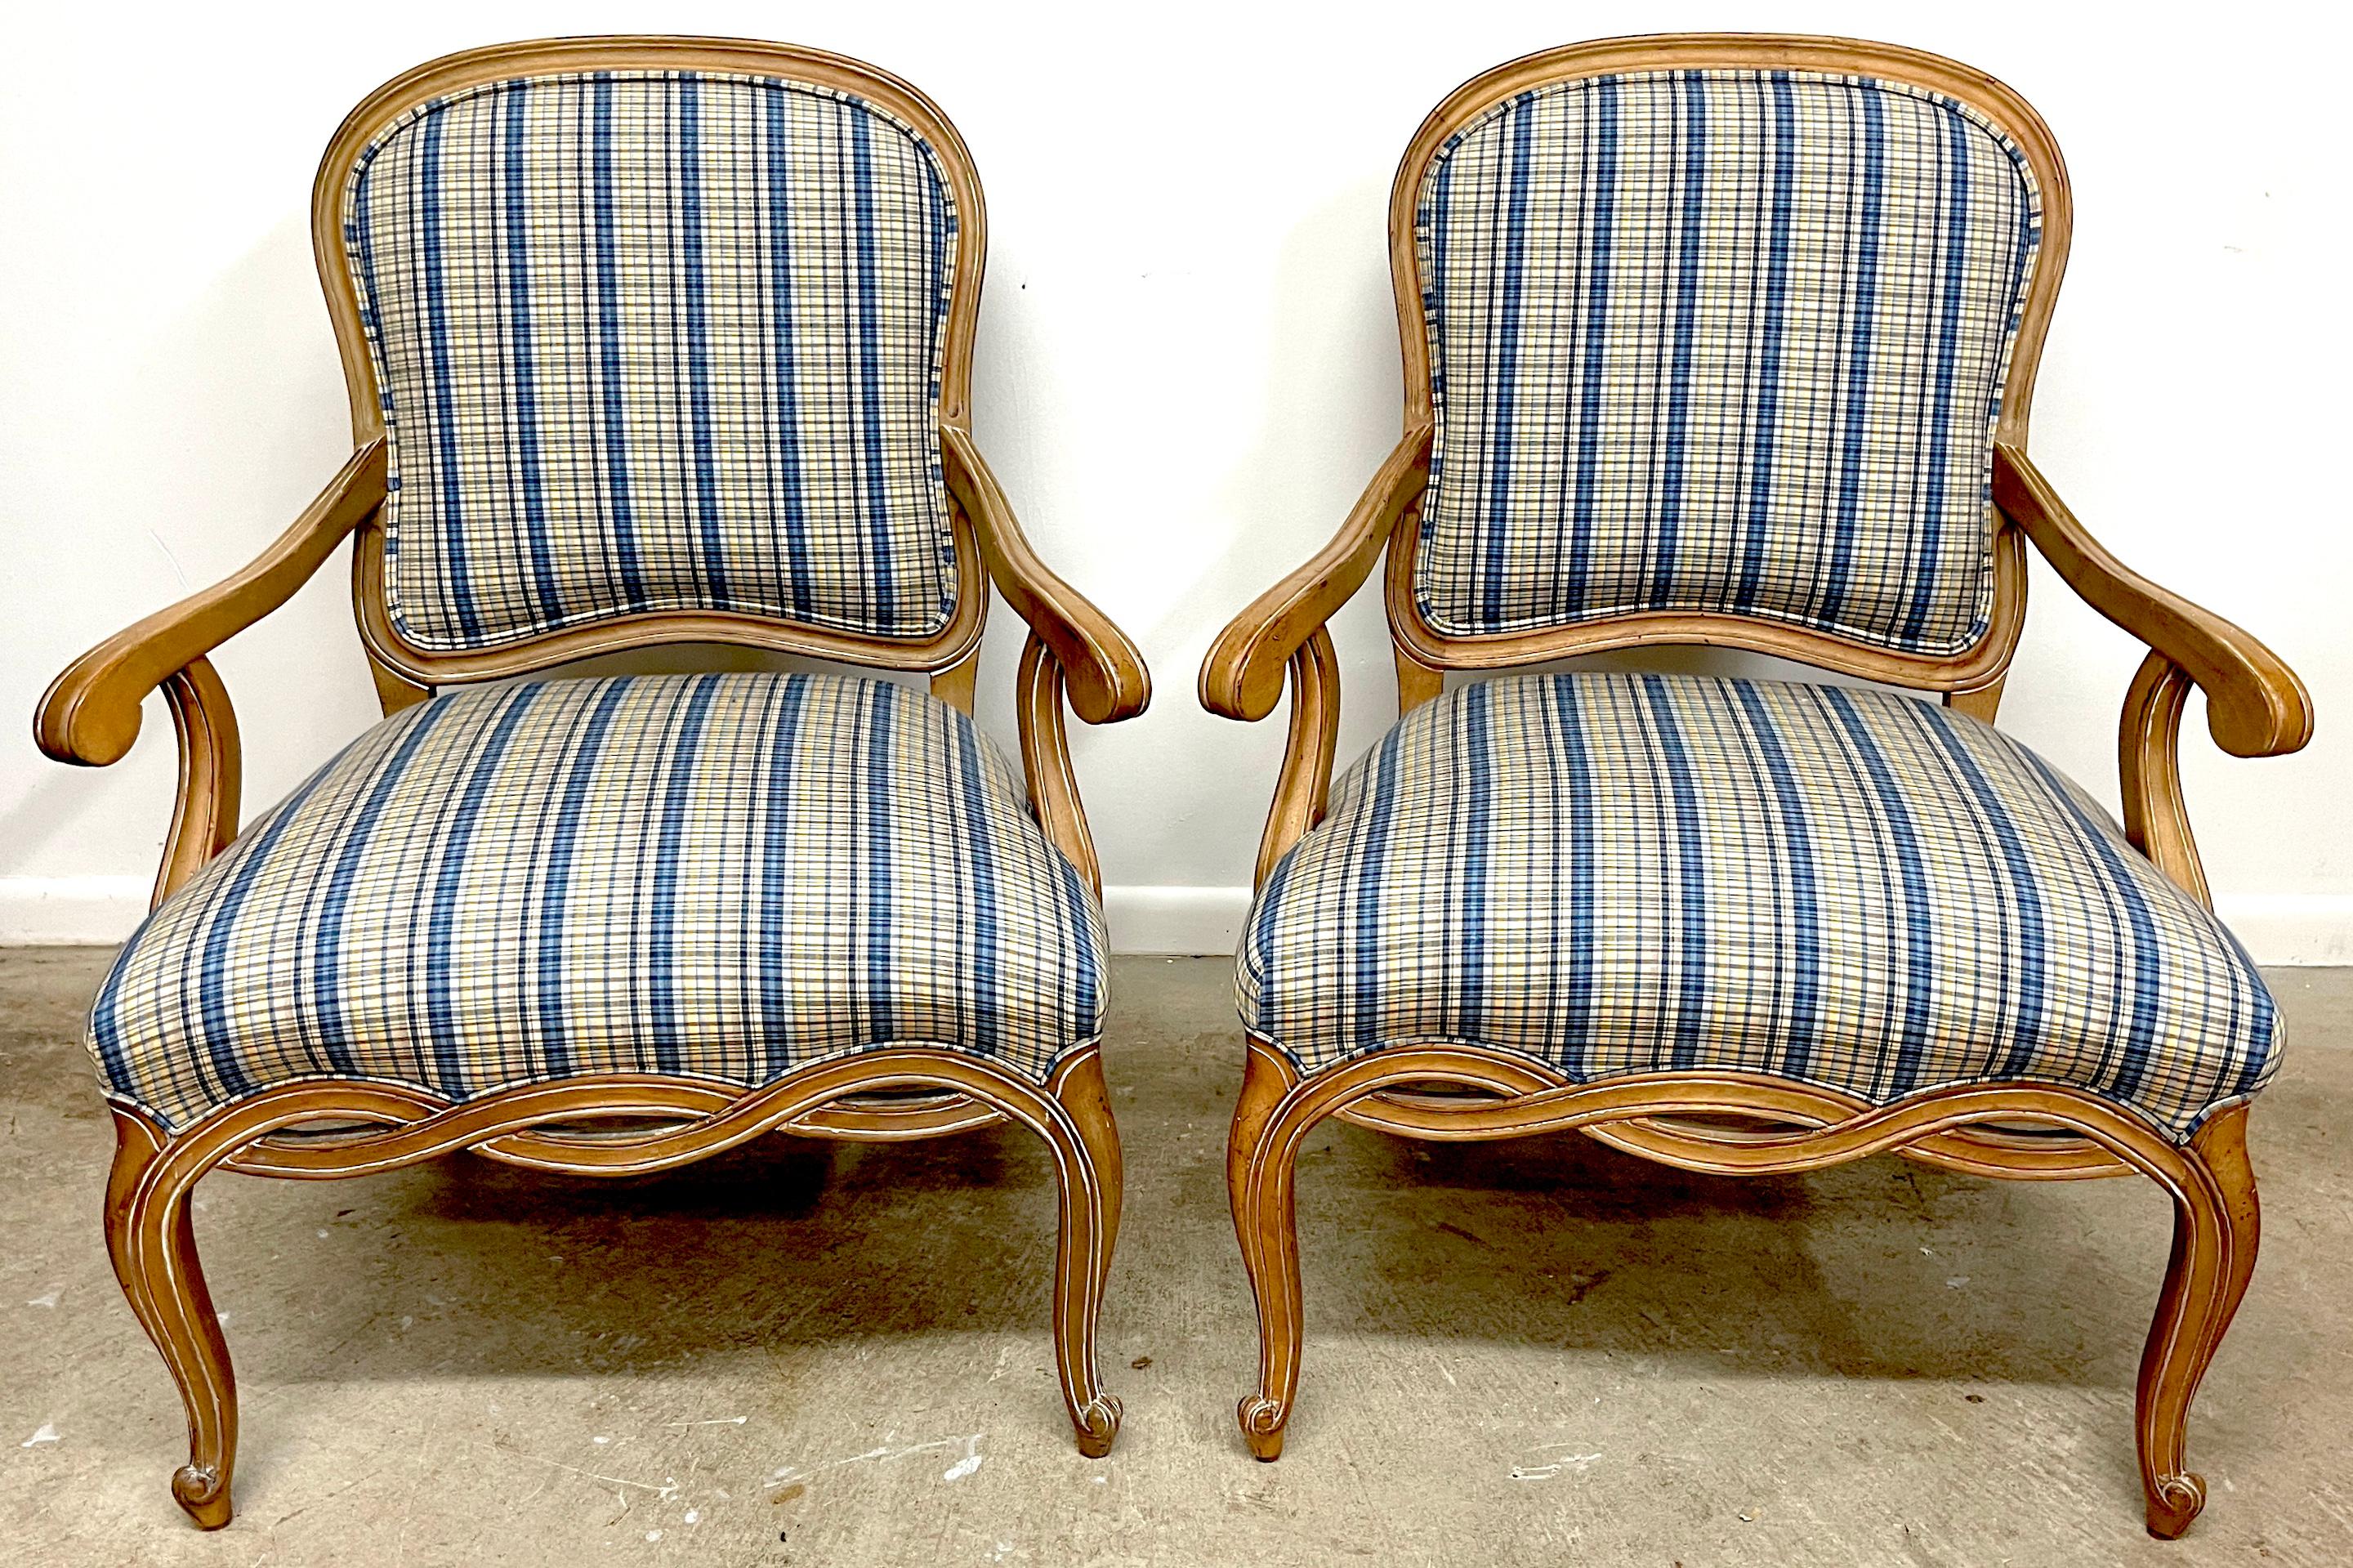 Paar großzügige italienische neoklassizistische Stühle aus gebleichtem Obstholz Bergere/Armstühle 
Italien, 20. Jahrhundert 

Ein Paar schöne italienische Bergere-Sessel im neoklassizistischen Stil, die im 20. Jahrhundert aus gebleichtem Obstholz